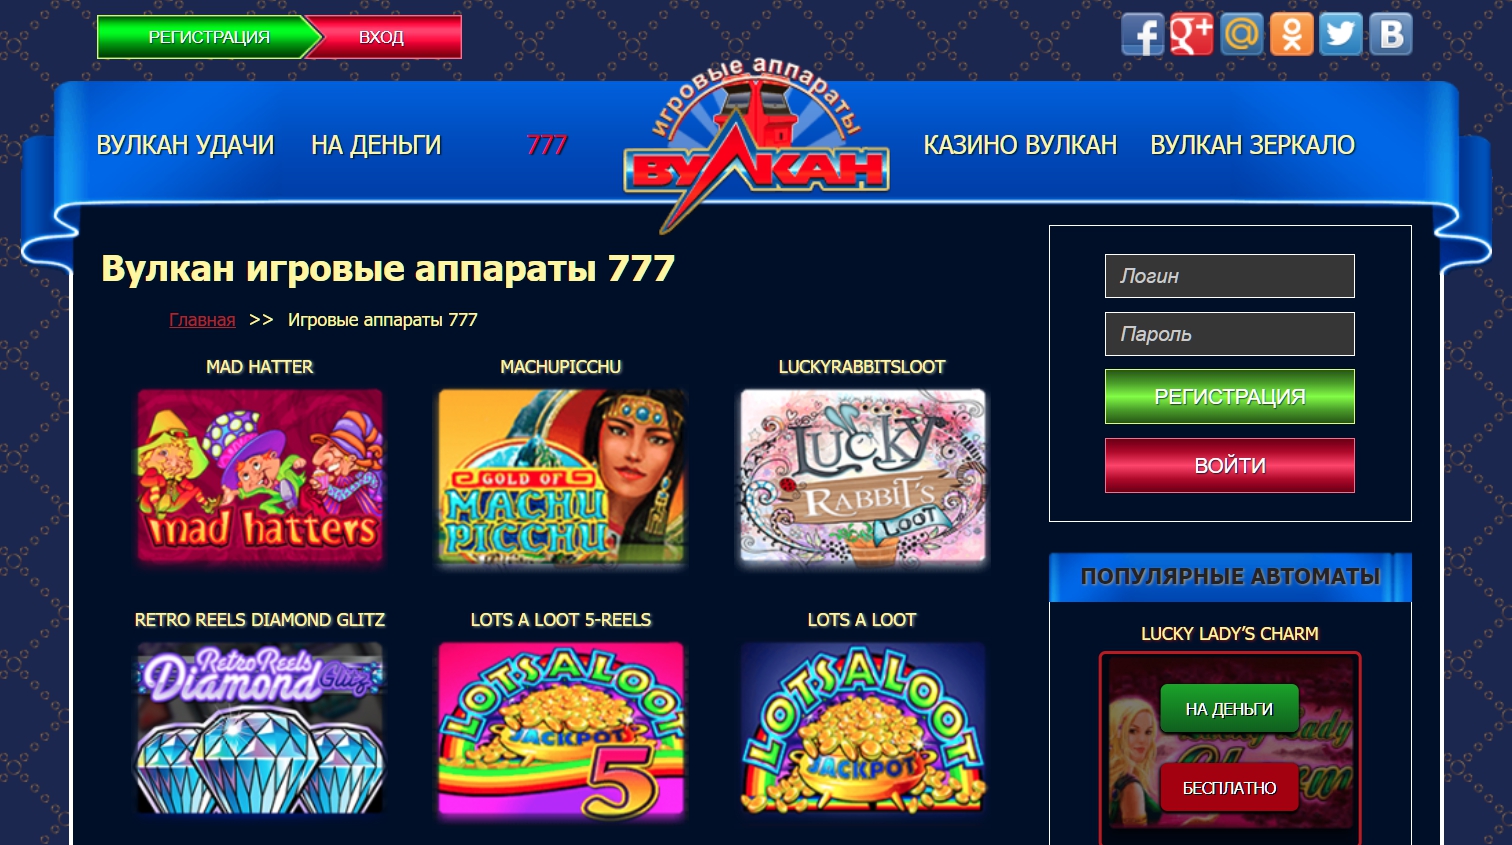 Casino vulcan online 1 xyz актуальные бездепозитные промокоды в онлайн казино